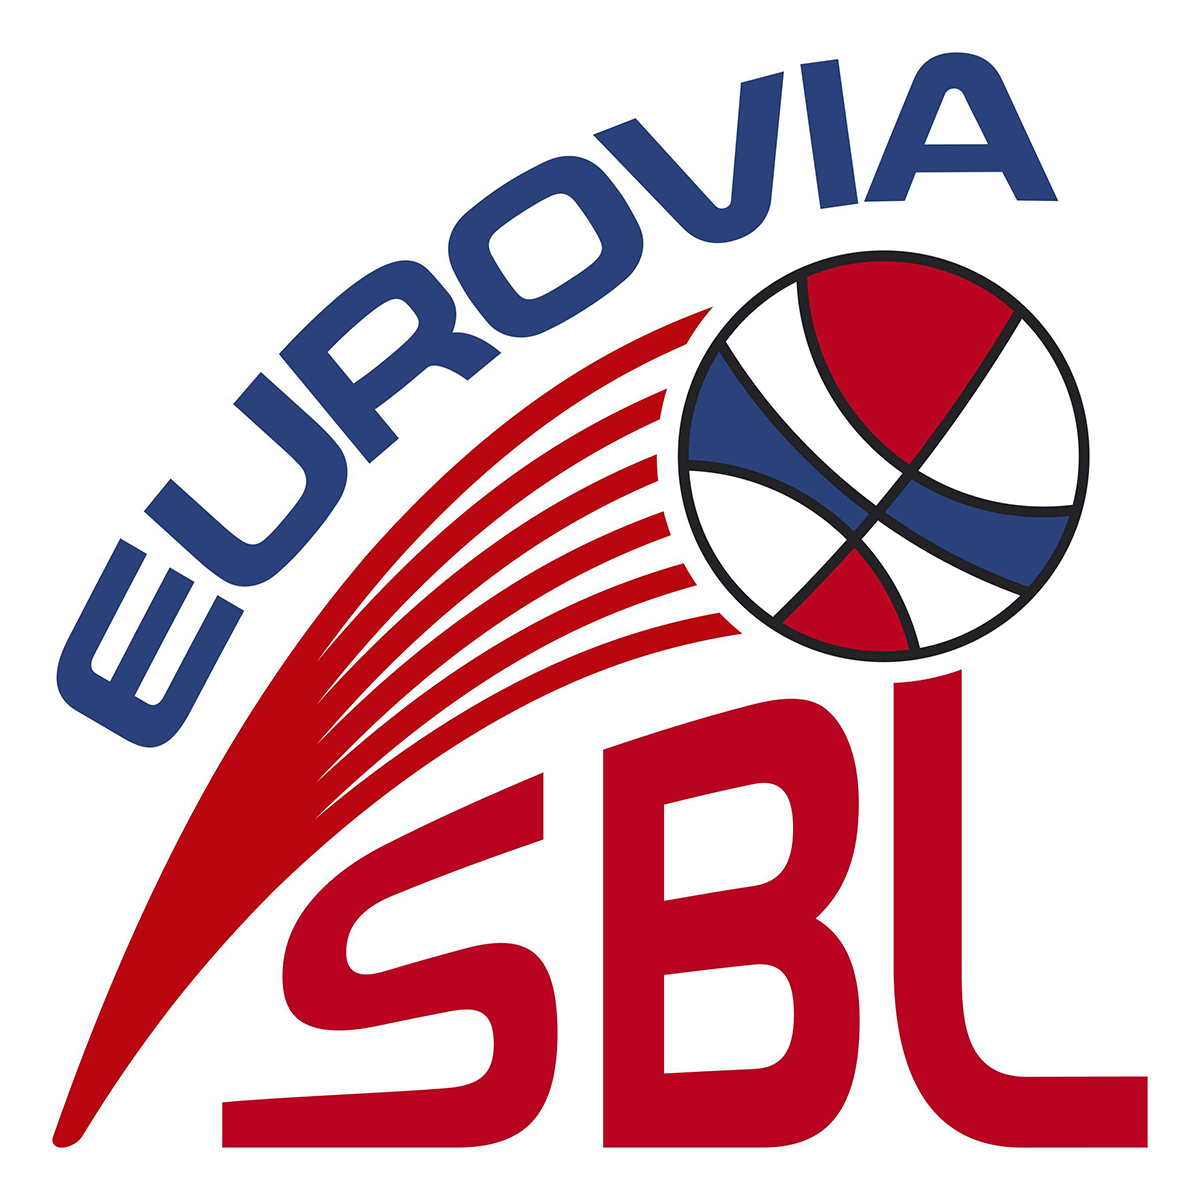 eurovia_sbl_logo